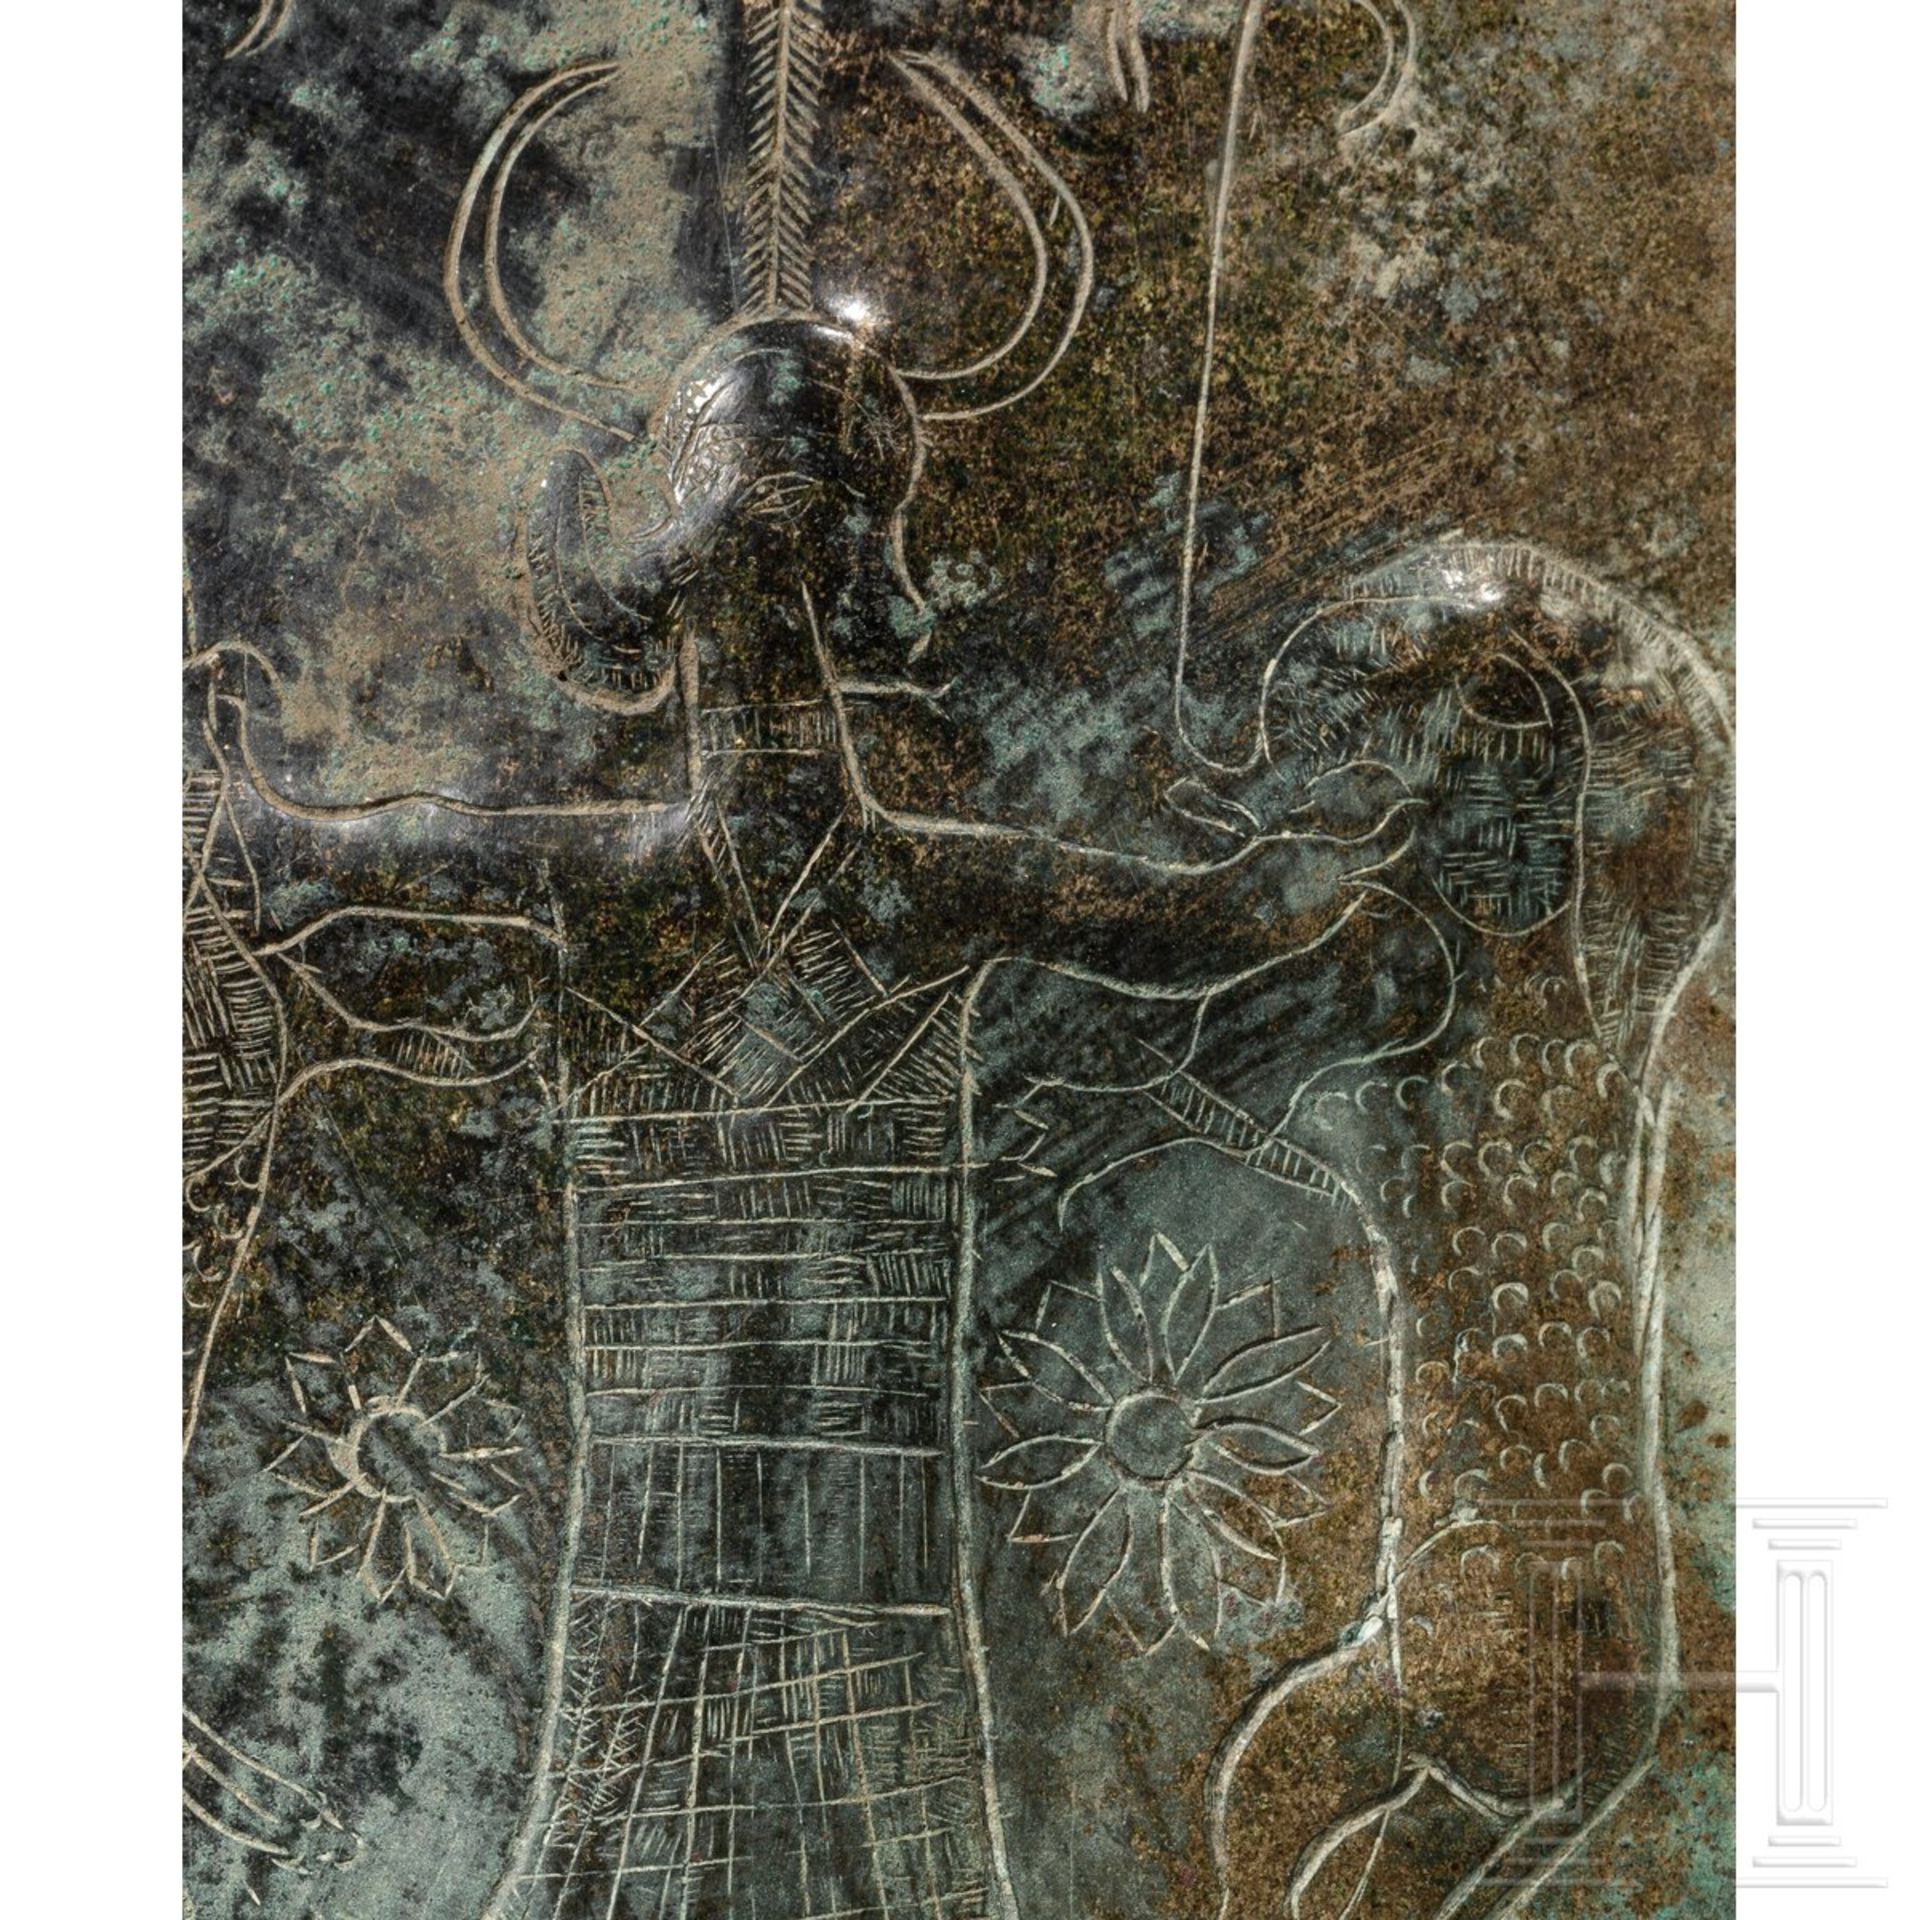 Bronzeblech mit dem "Lord of the Animals", urartäisch, 9. - 8. Jhdt. v. Chr. - Image 3 of 3